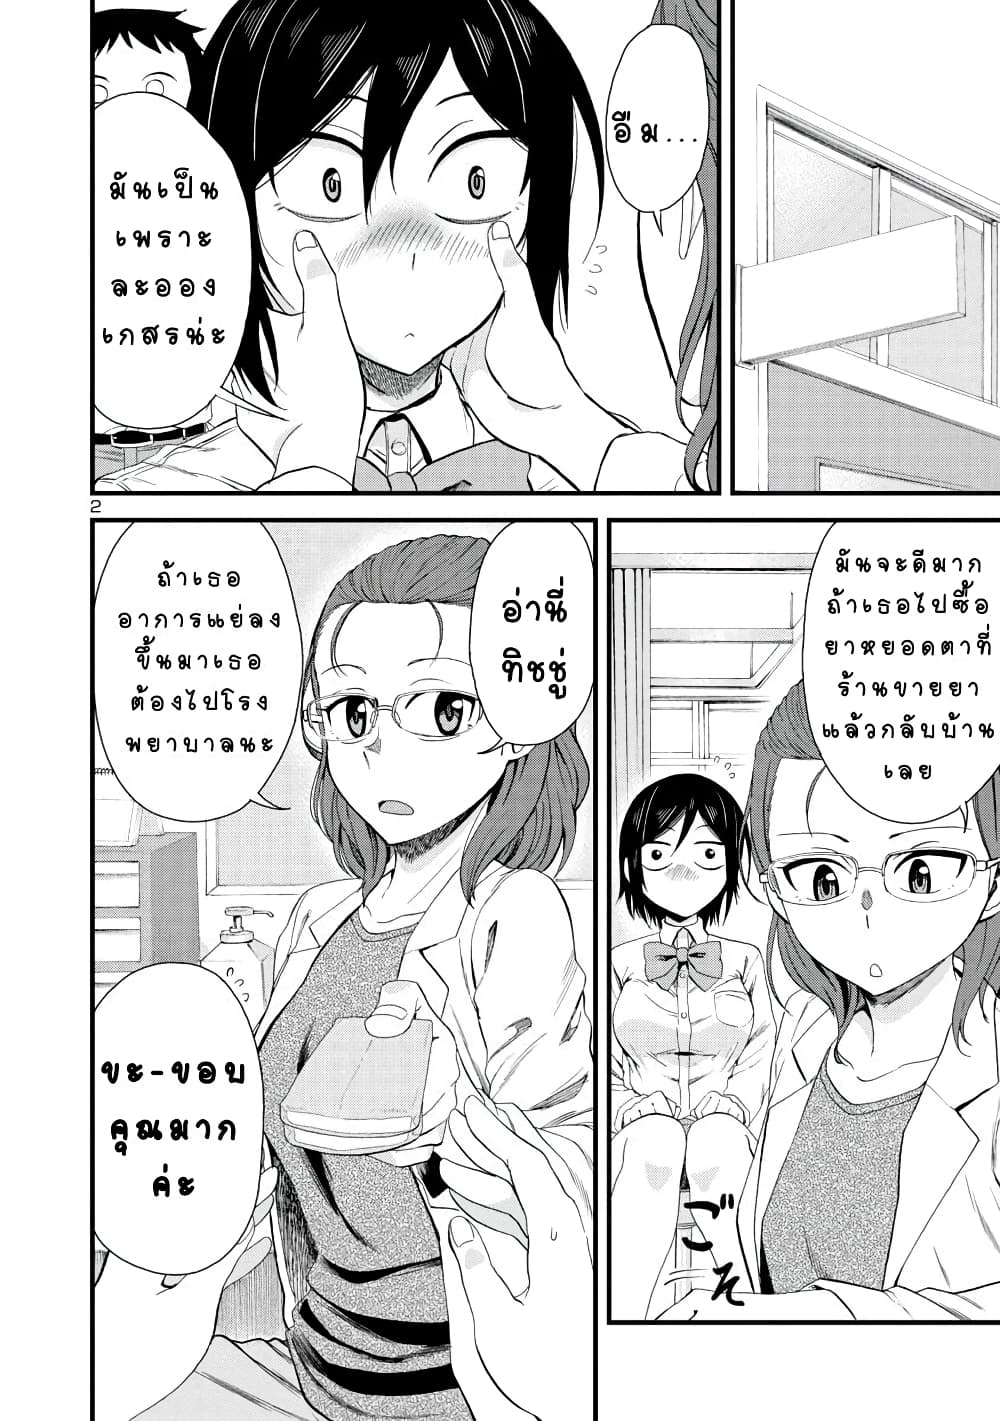 Hitomi-chan Is Shy With Strangers วันๆของน้องฮิโตมิก็เป็นแบบนี้แหล่ะ 19-19